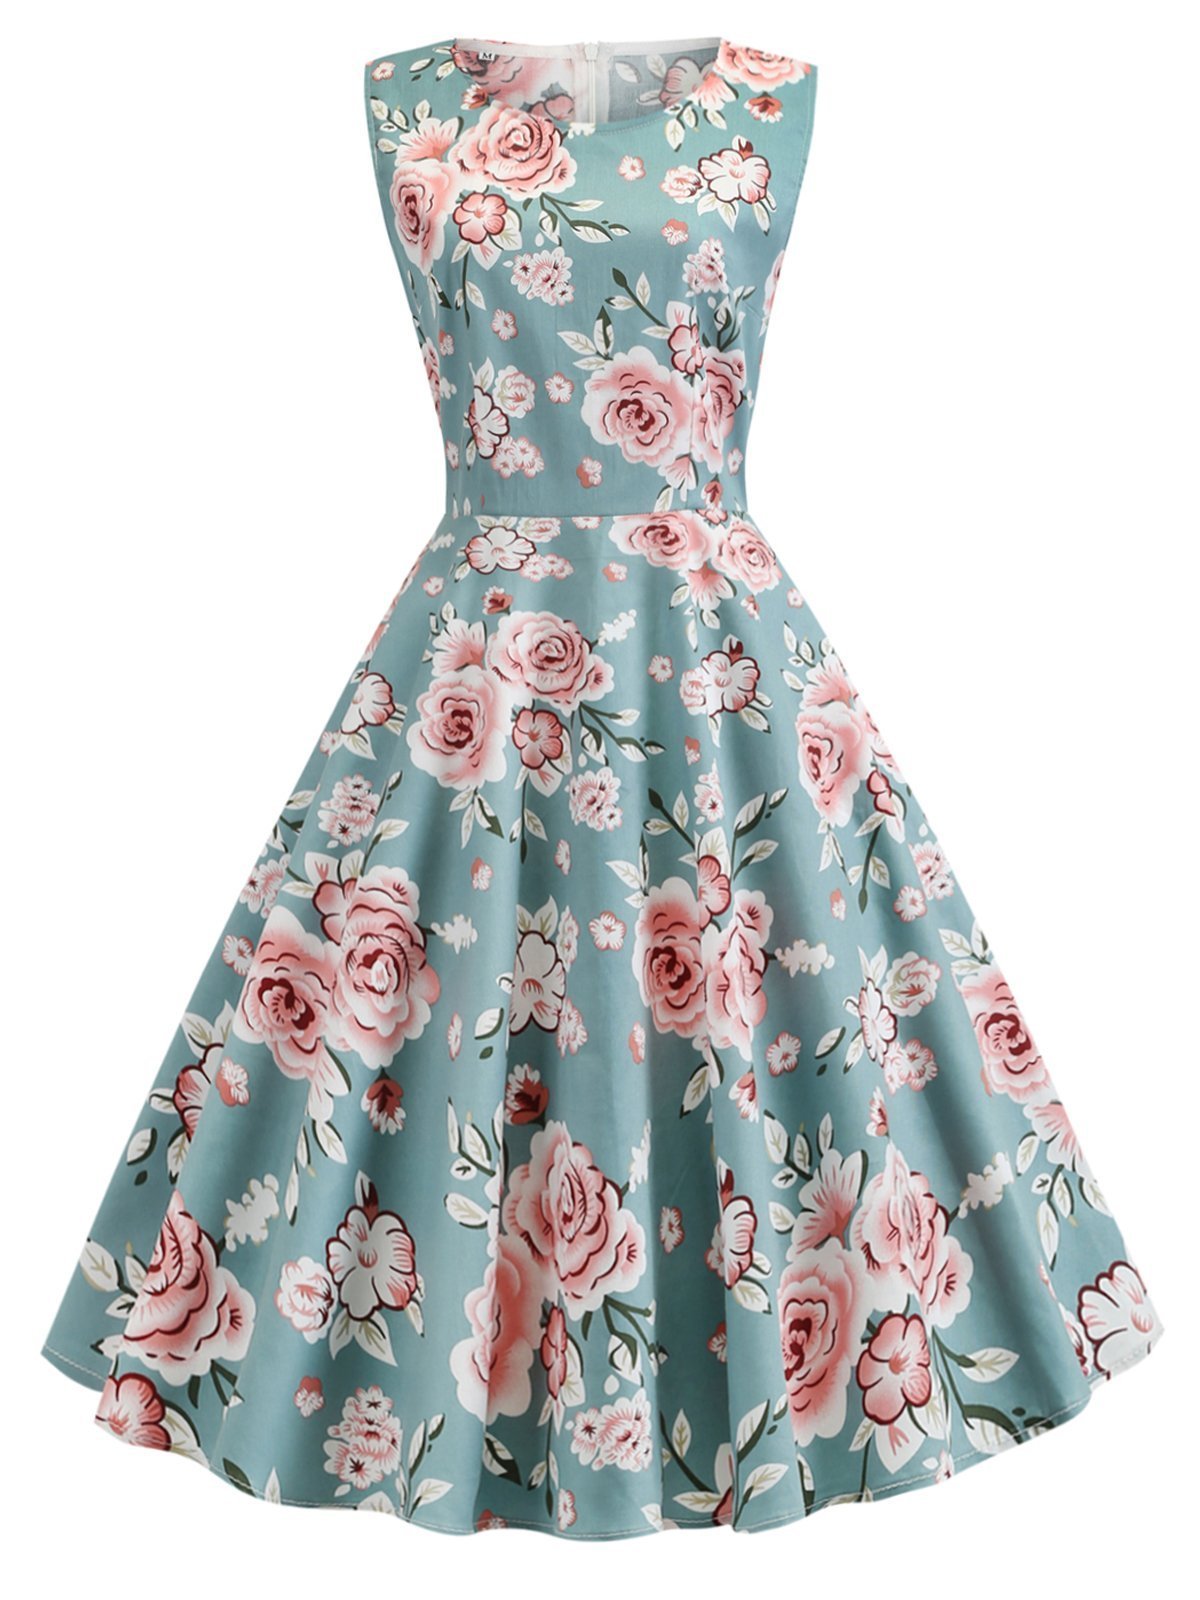 1950s Floral Sleeveless Swing Dress – TiktokDresses